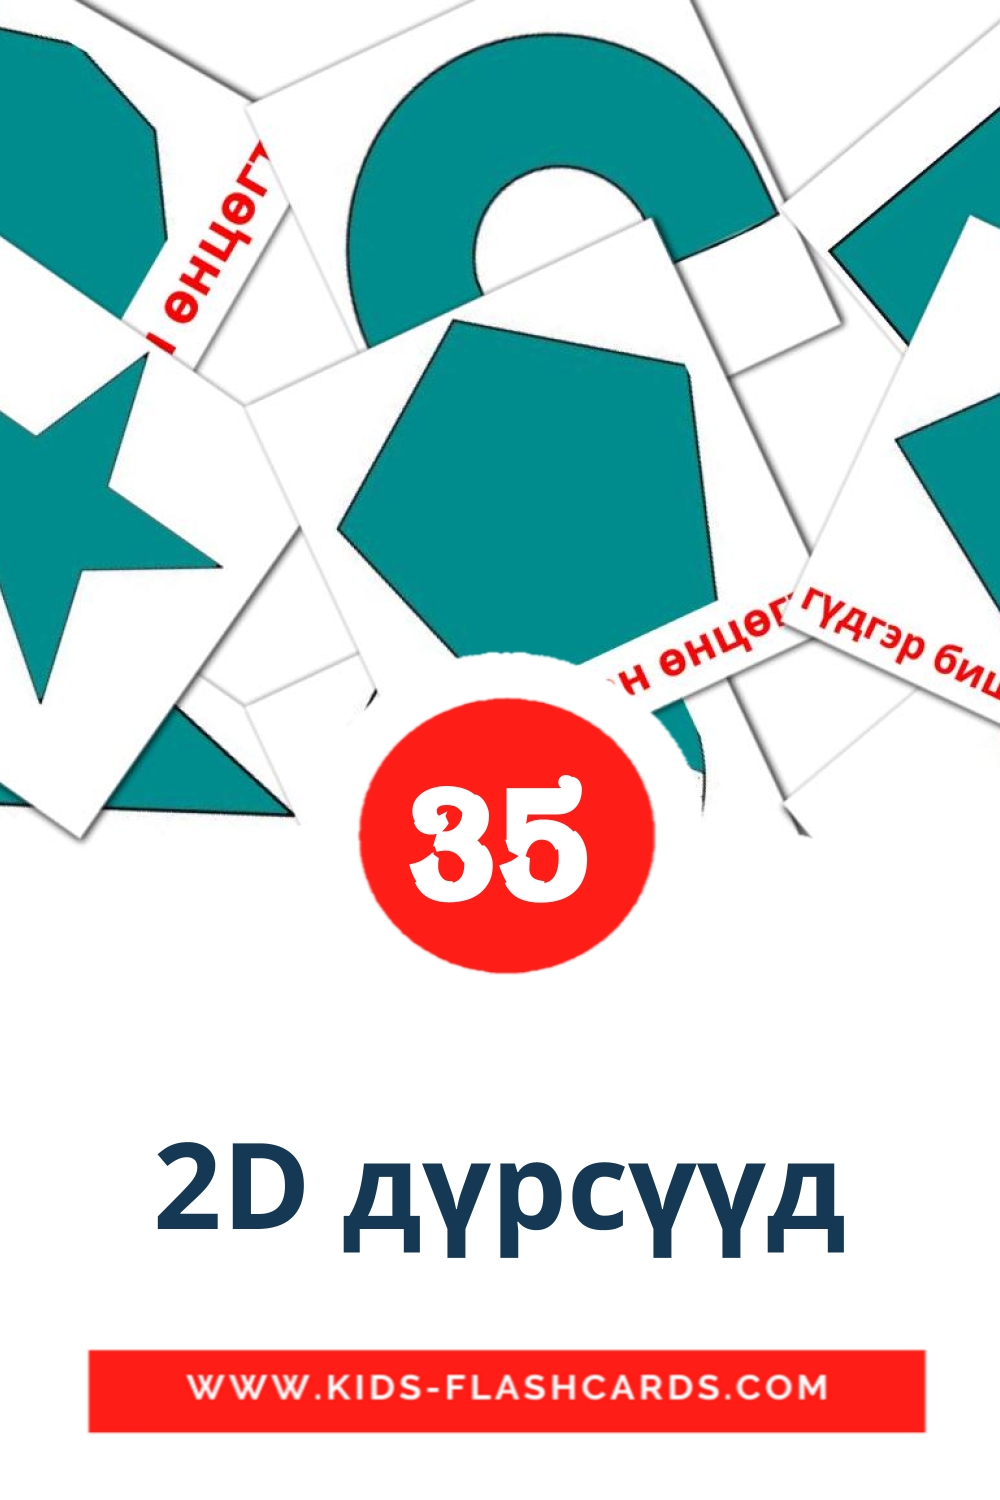 35 2D дүрсүүд fotokaarten voor kleuters in het mongolisch